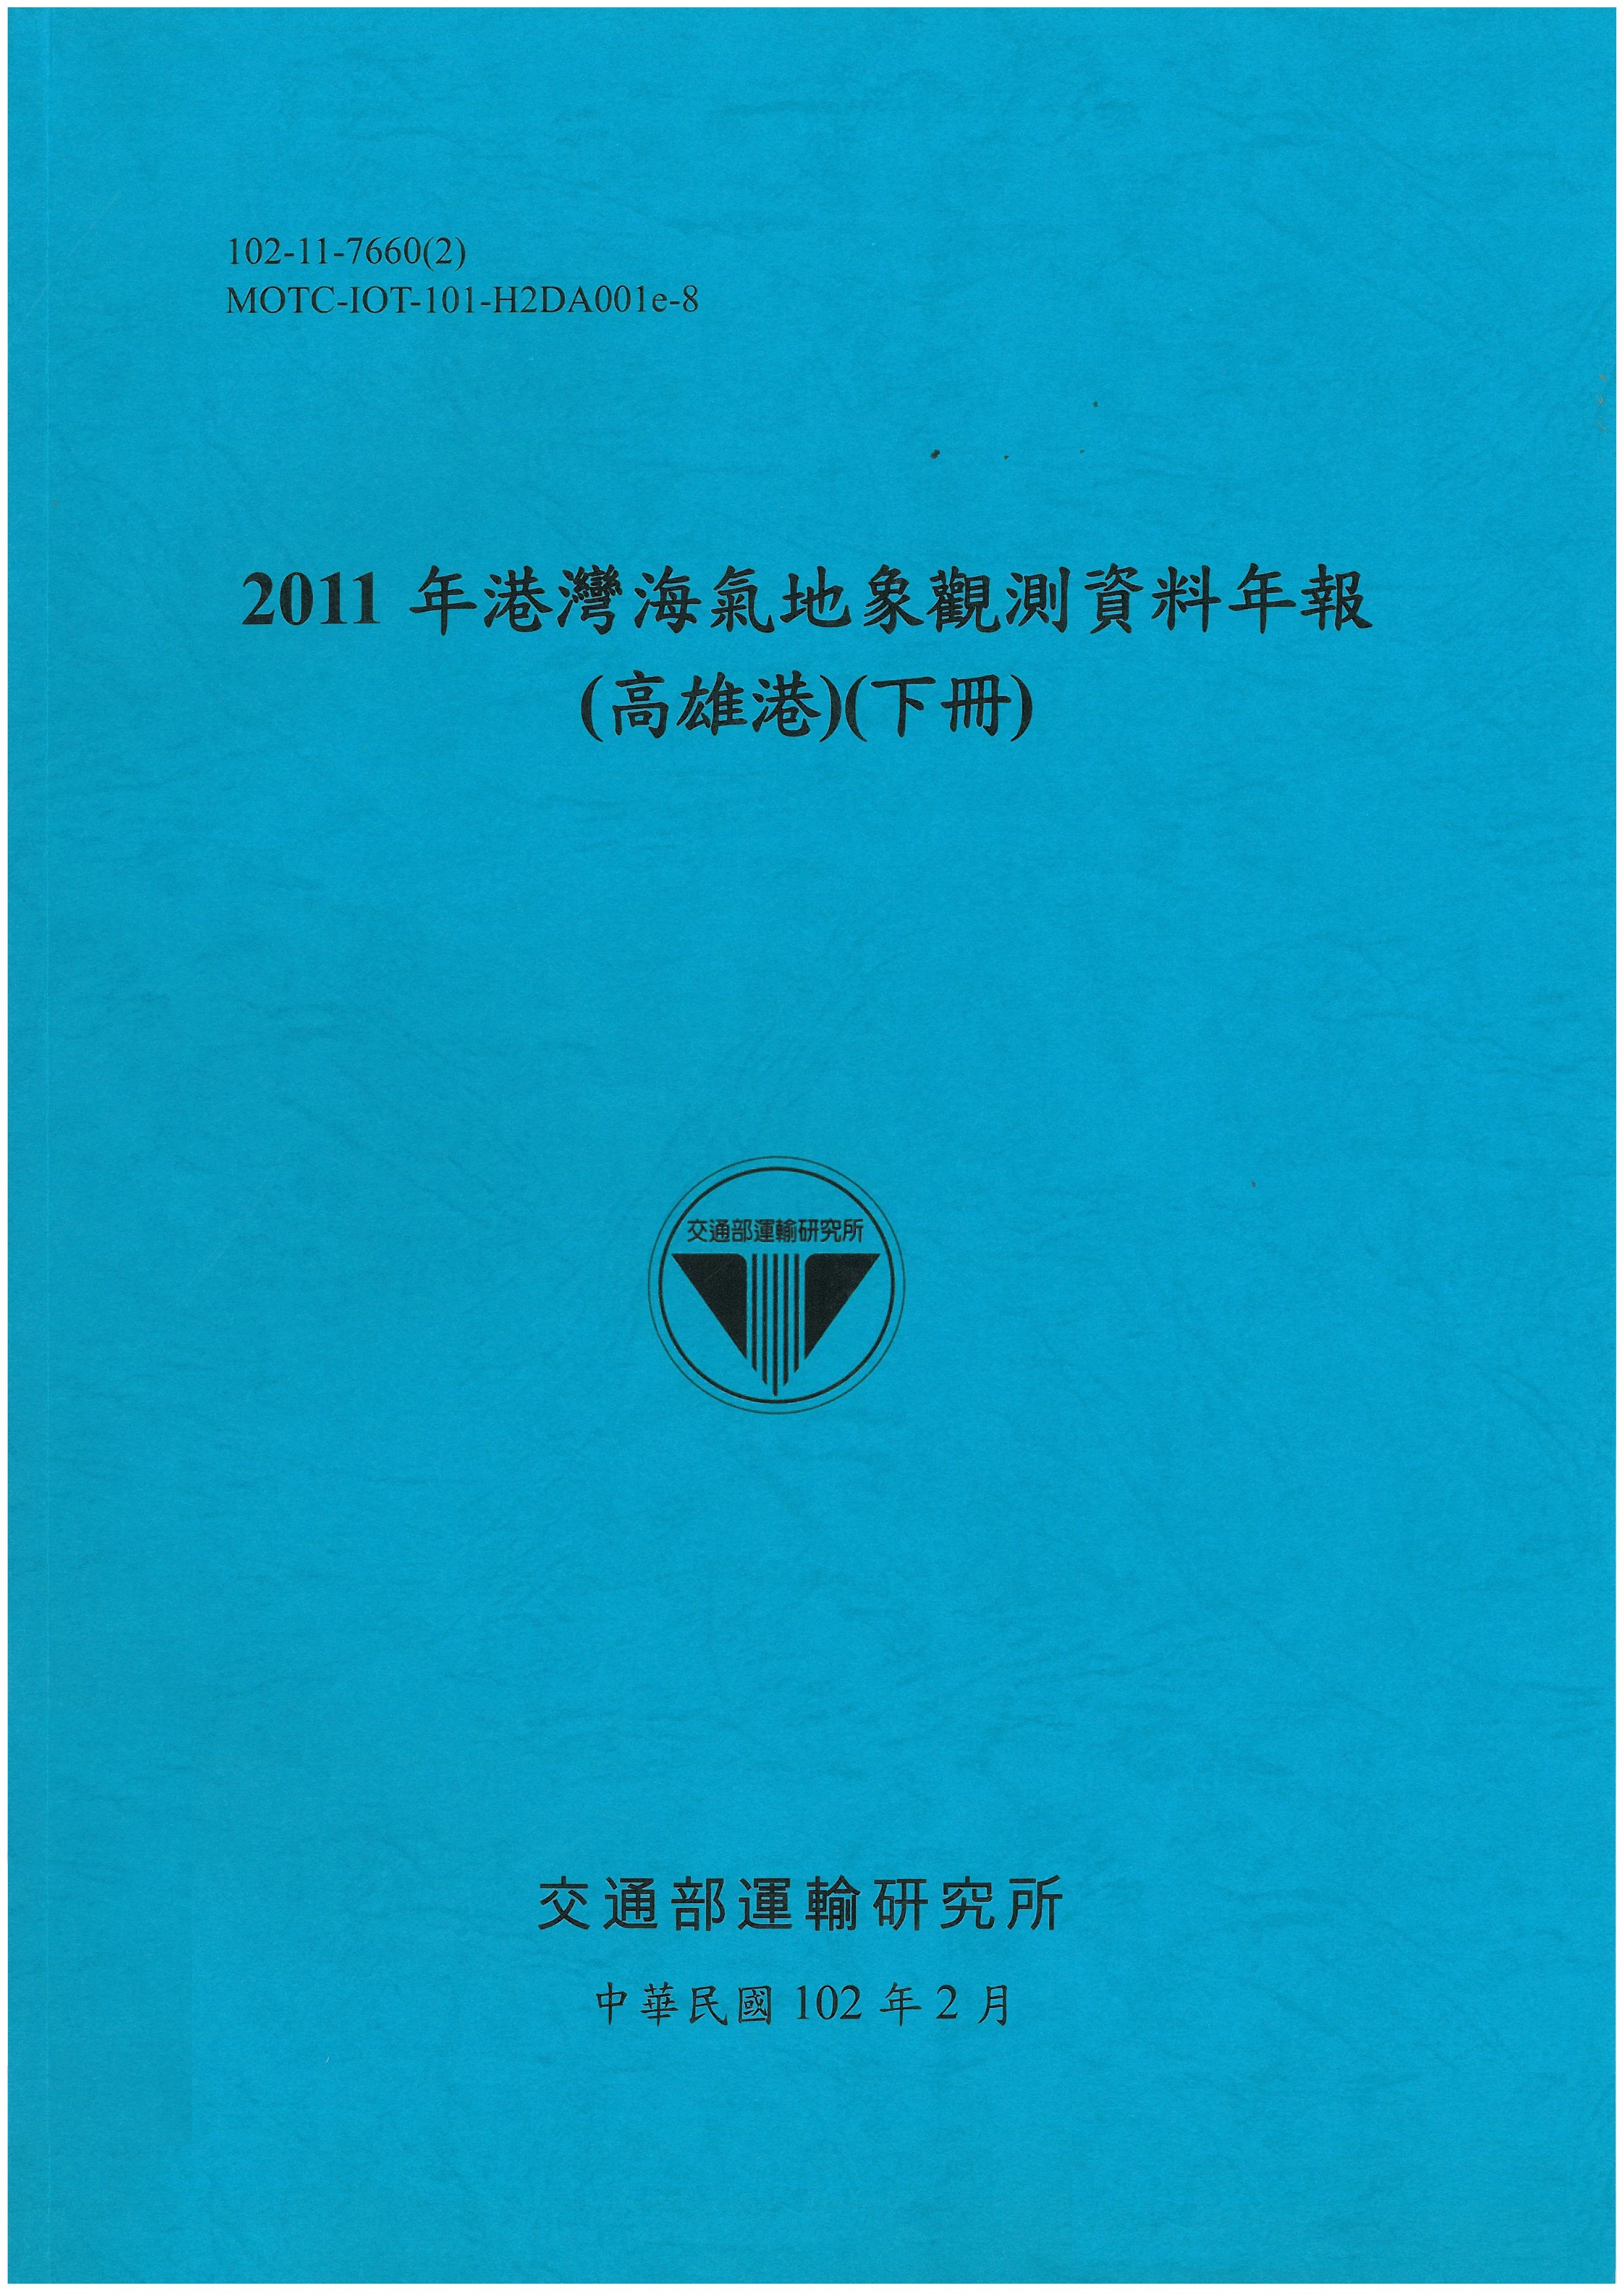 2011年港灣海氣地象觀測資料年報(高雄港)(下冊)